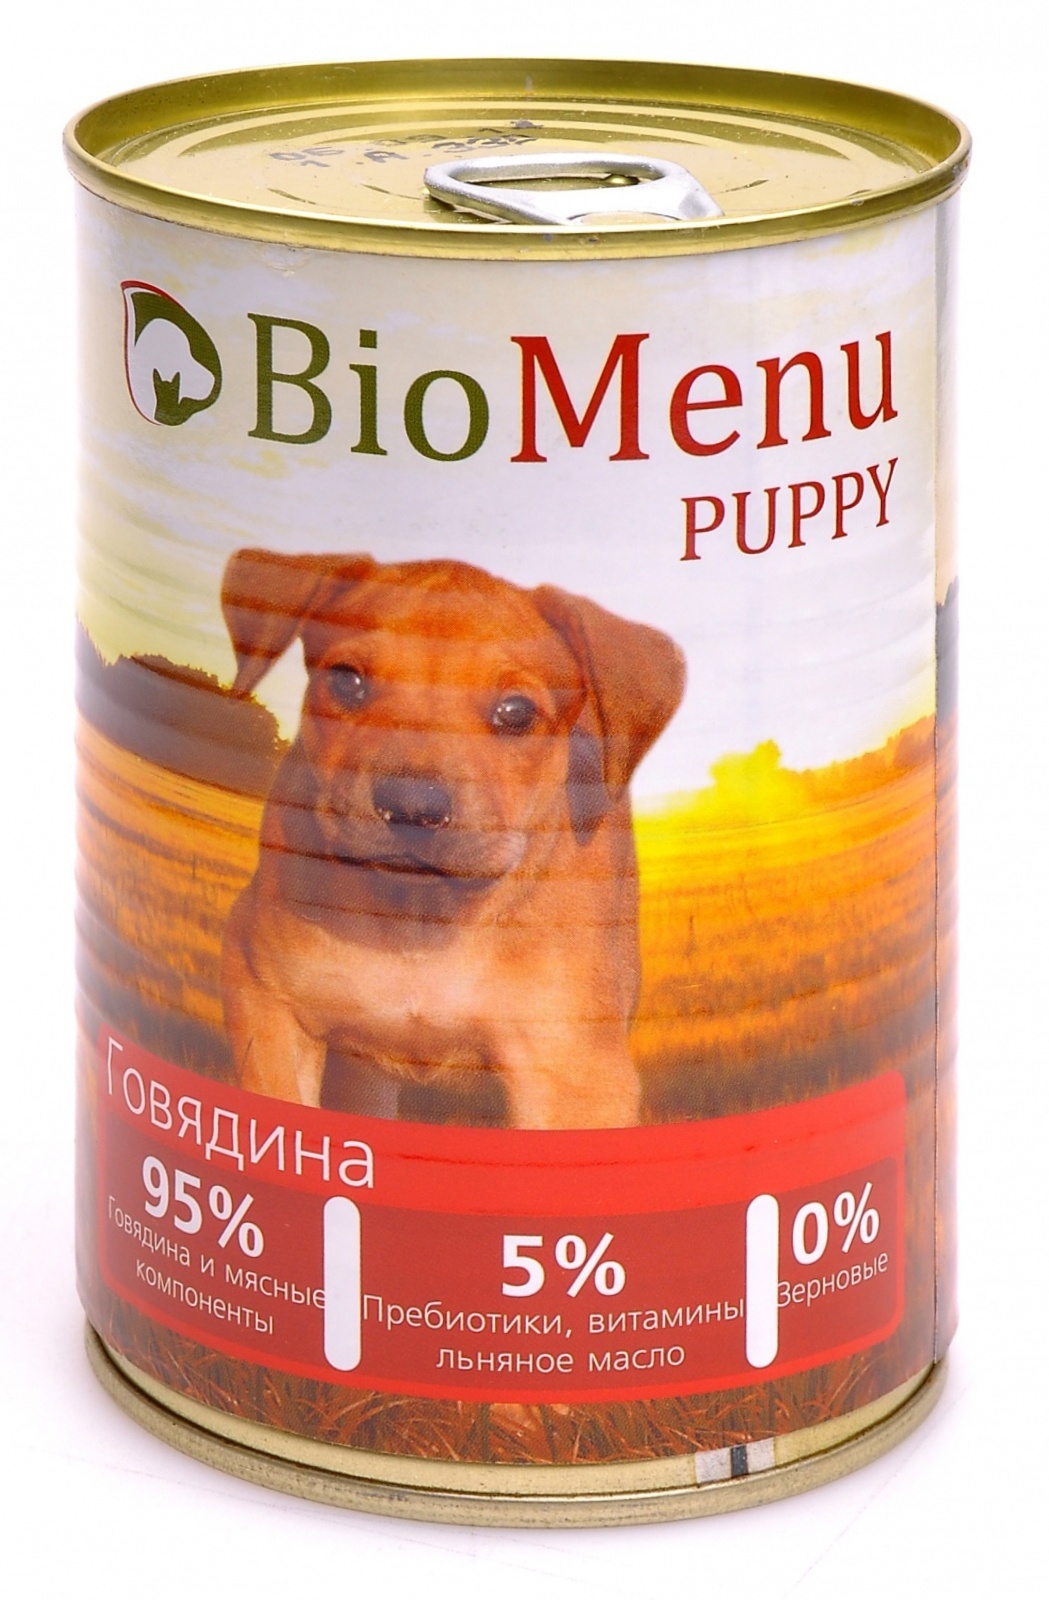 BioMenu BioMenu консервы для щенков с говядиной (100 г) консервы biomenu puppy для щенков говядина 95% мясо 100гр